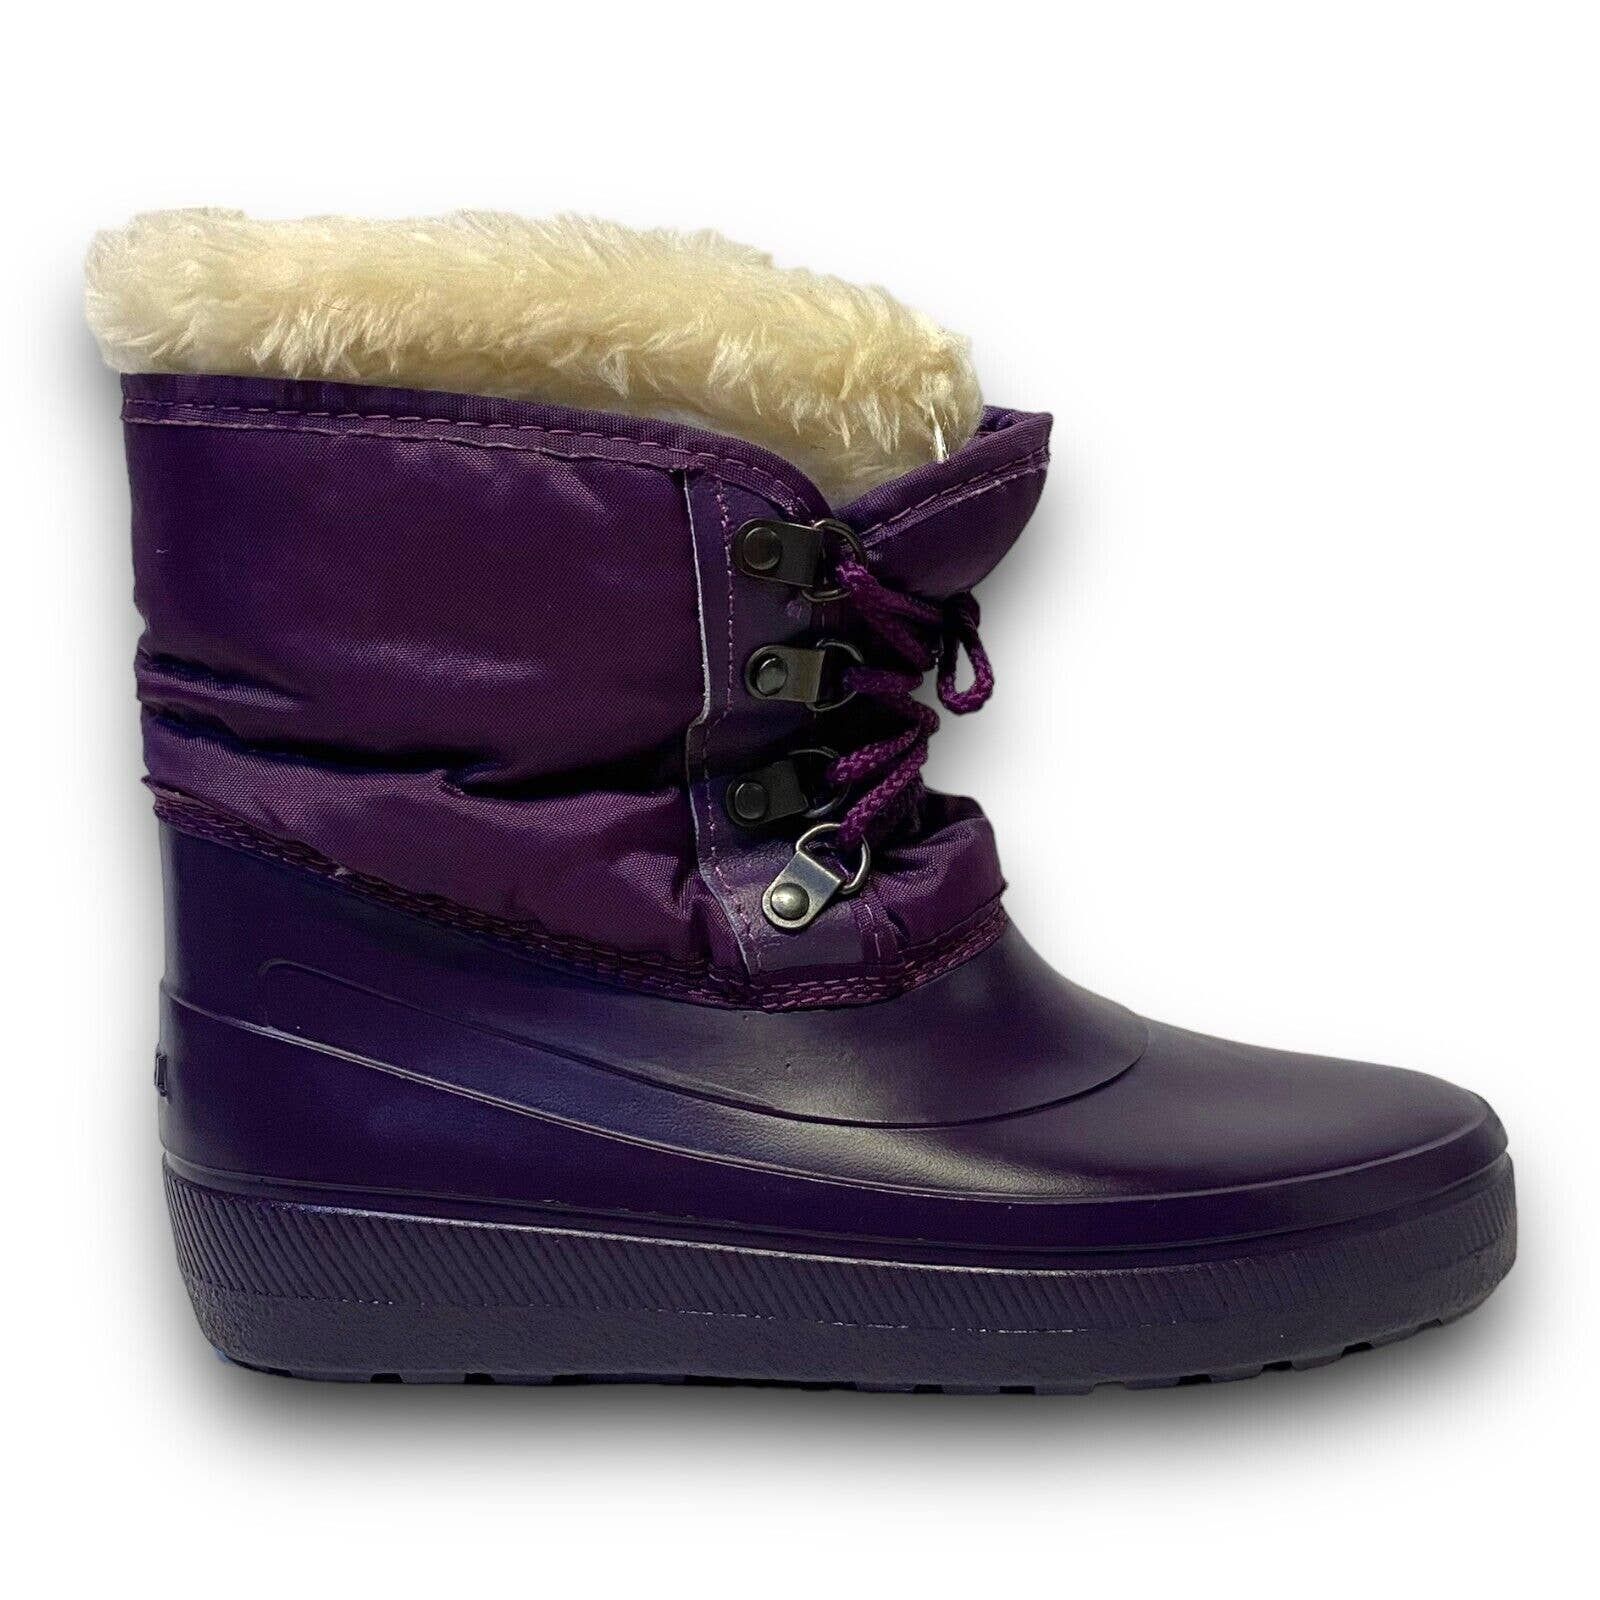 Vintage Vintage Sorel Purple Fur Lined Rubber Winter Rain Snow Boots Size US 5 / IT 35 - 4 Thumbnail